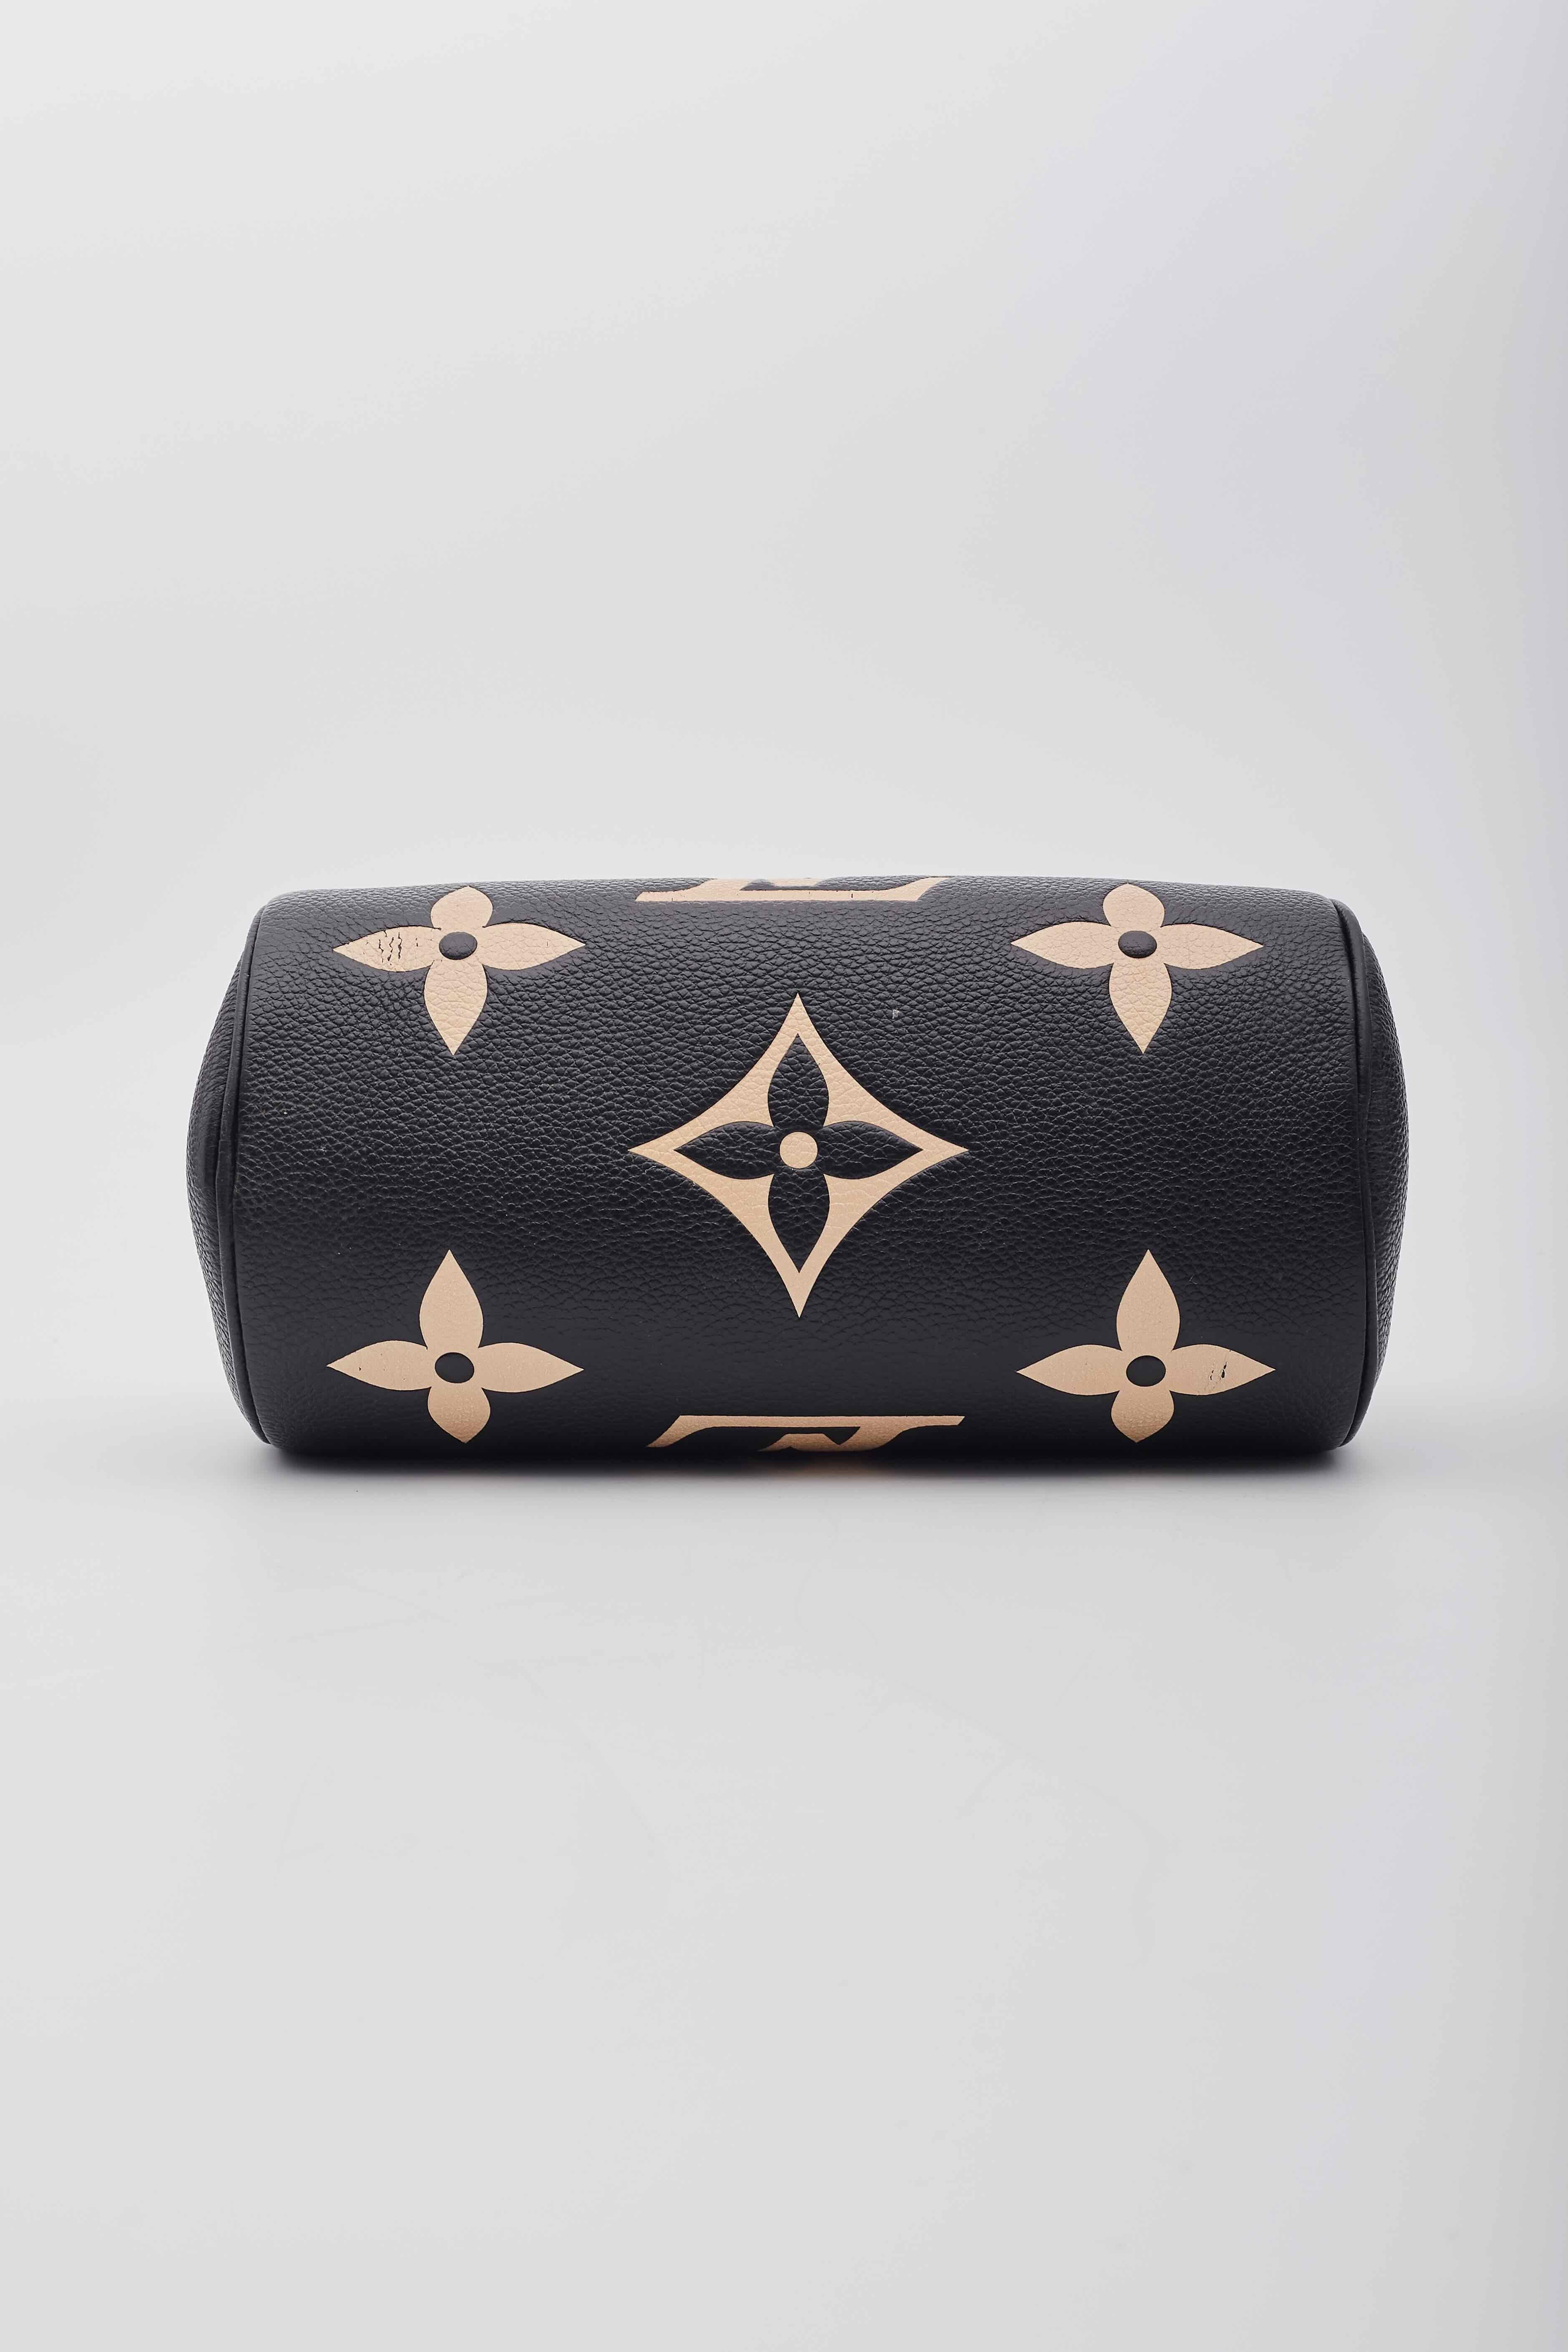 Louis Vuitton Monogram Black Empreinte Papillon BB Bag For Sale 1